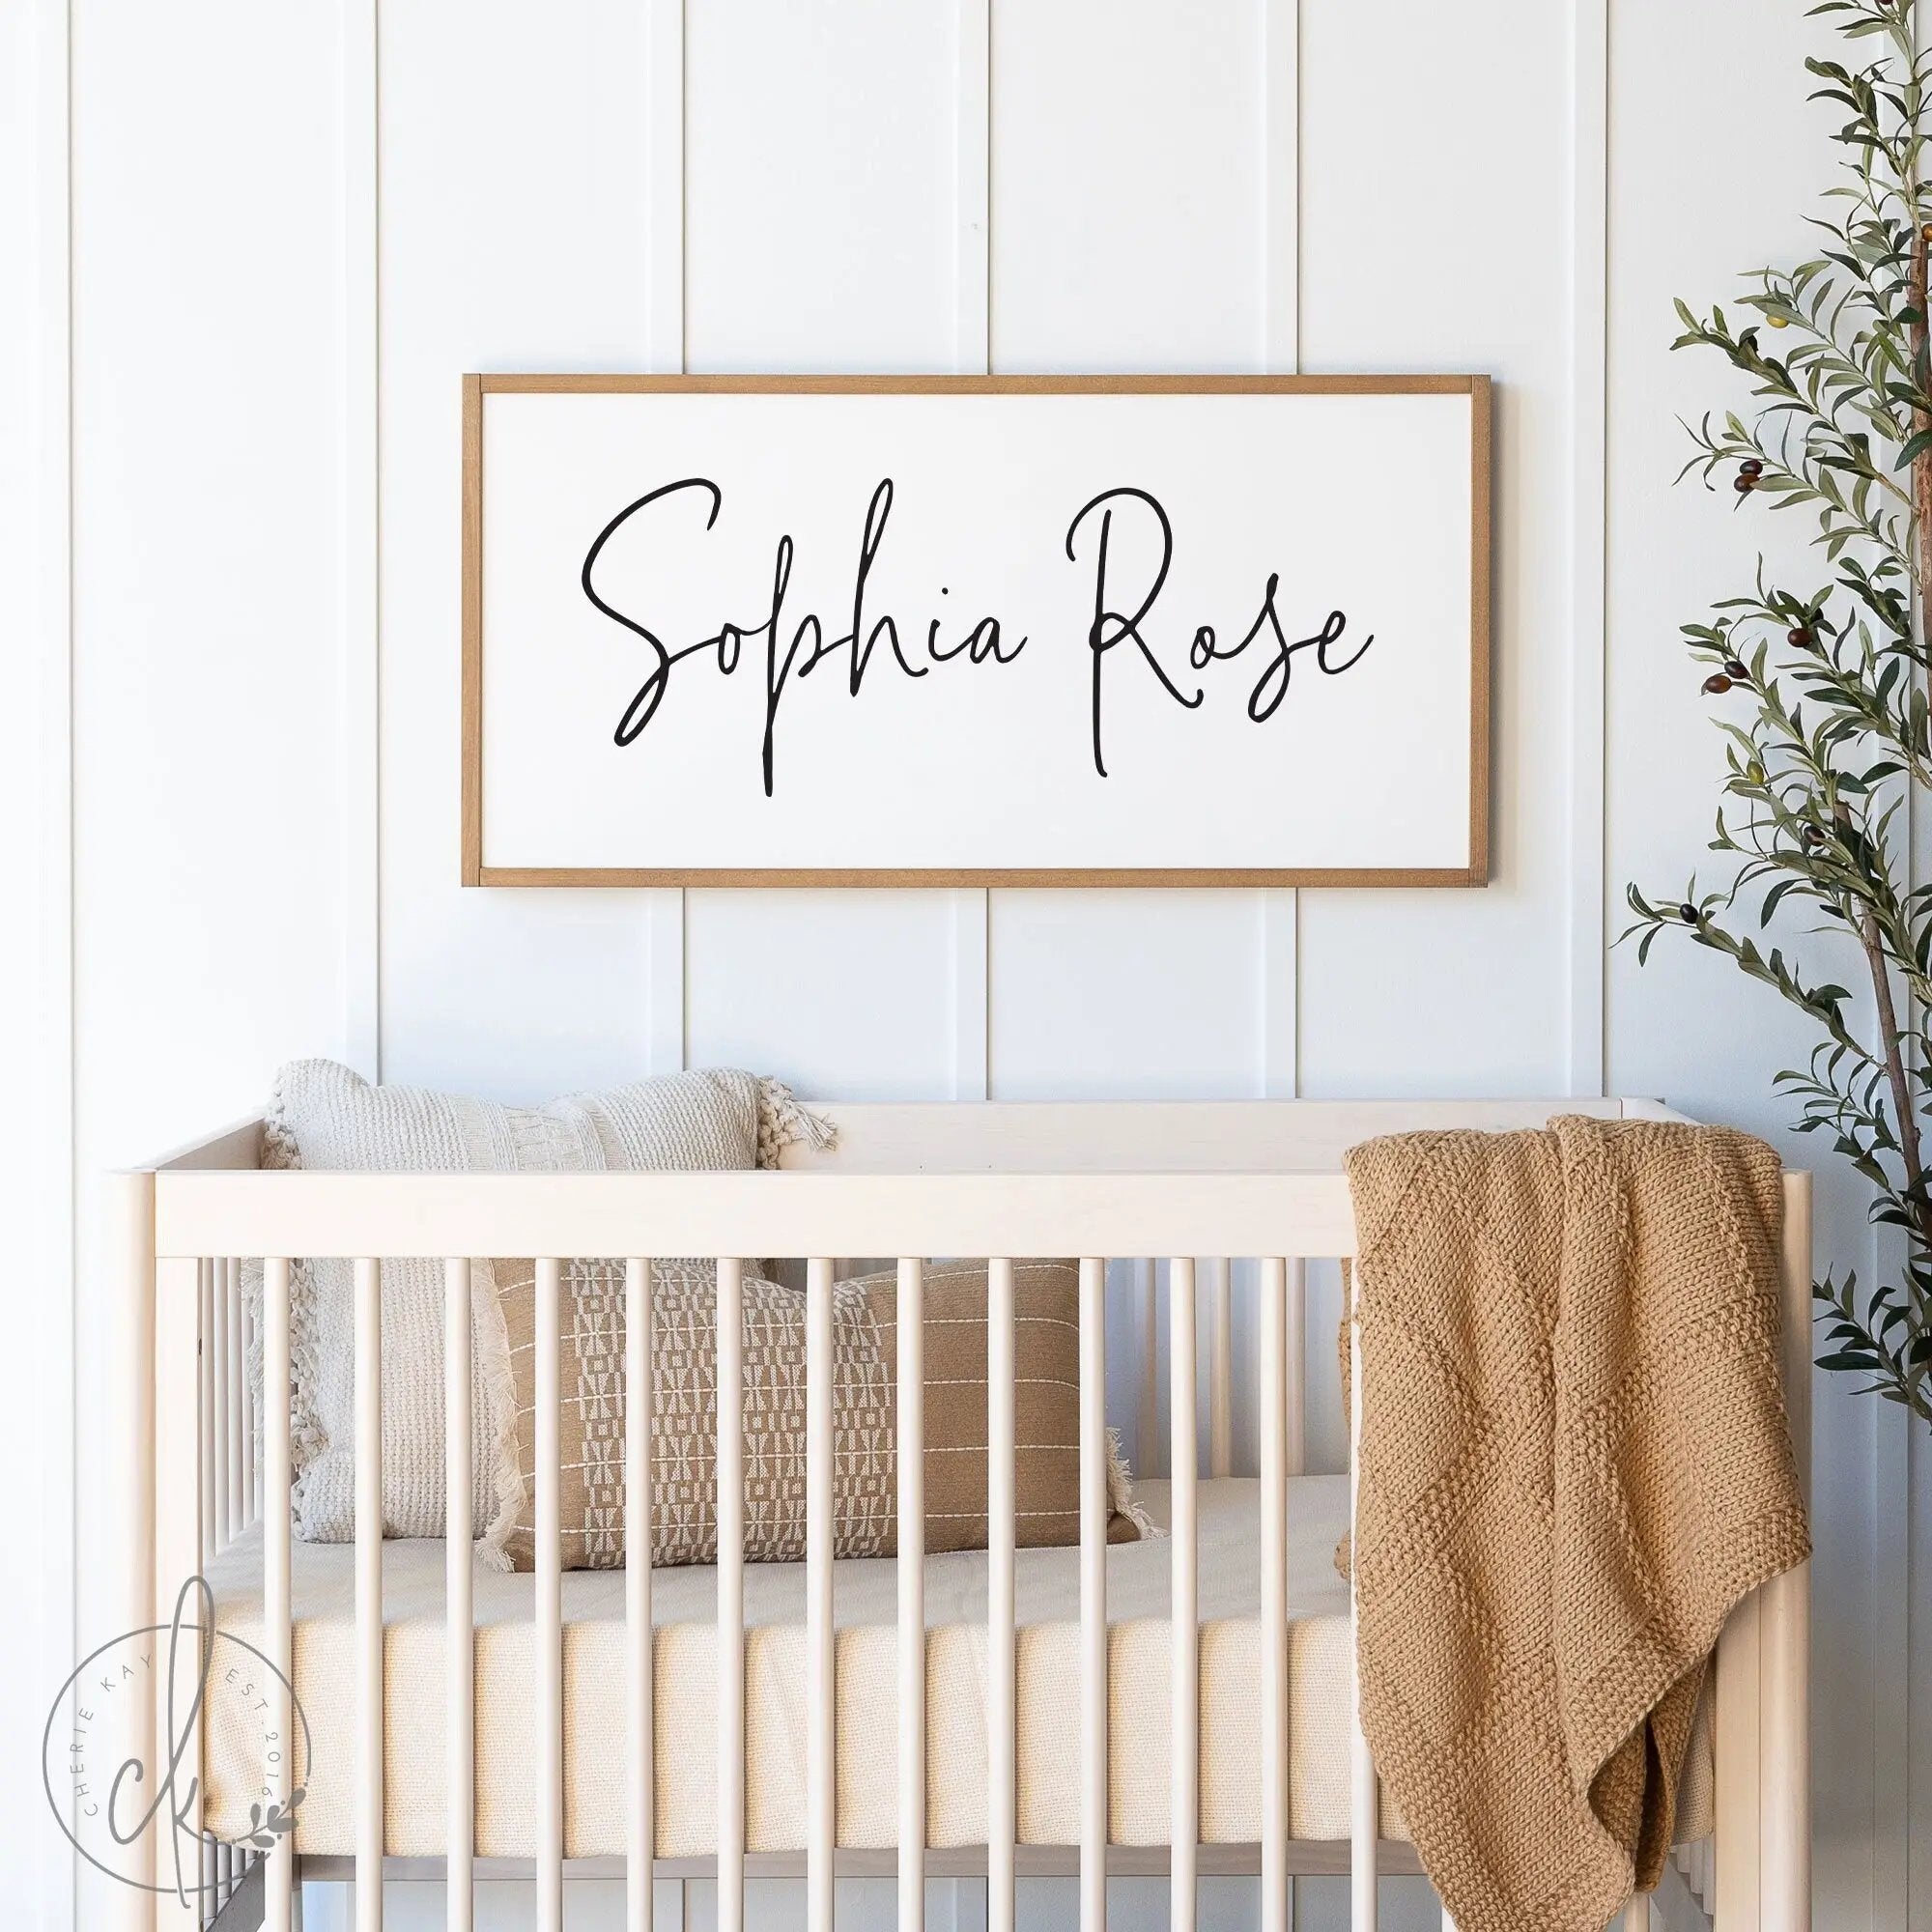 Name Sign For Nursery | Girl Name Sign | Nursery Room Decor | Baby Shower Gift | Wood Framed Sign | Sophia Rose